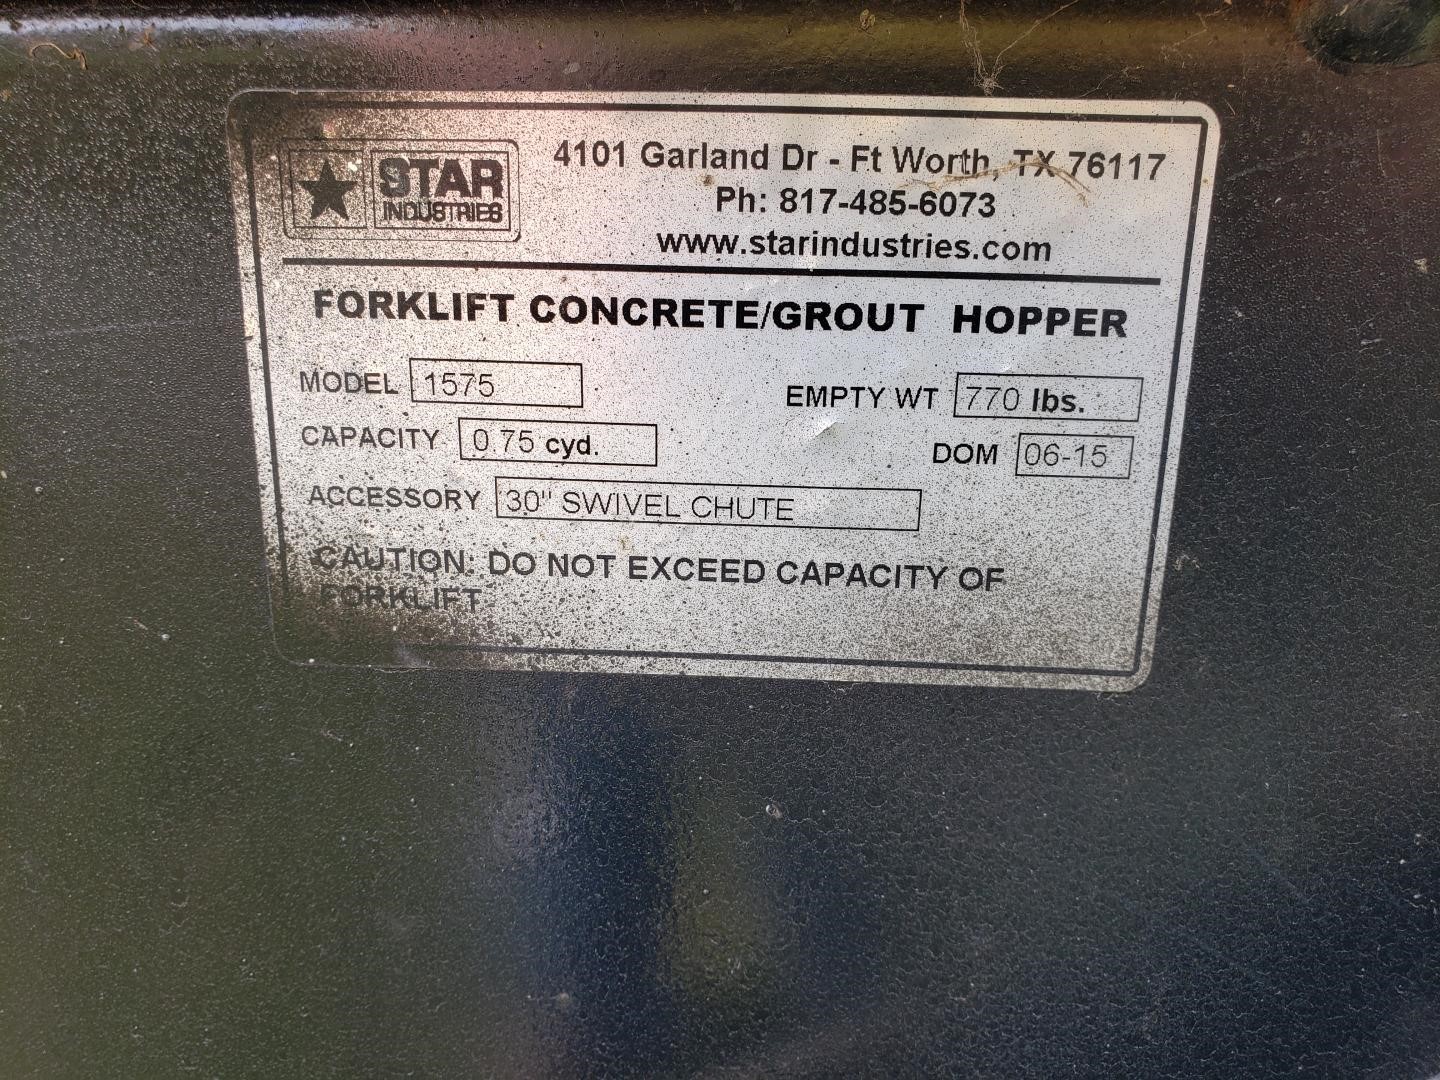 2015 Star 1575 Forklift Concrete Grout Hopper Bigiron Auctions